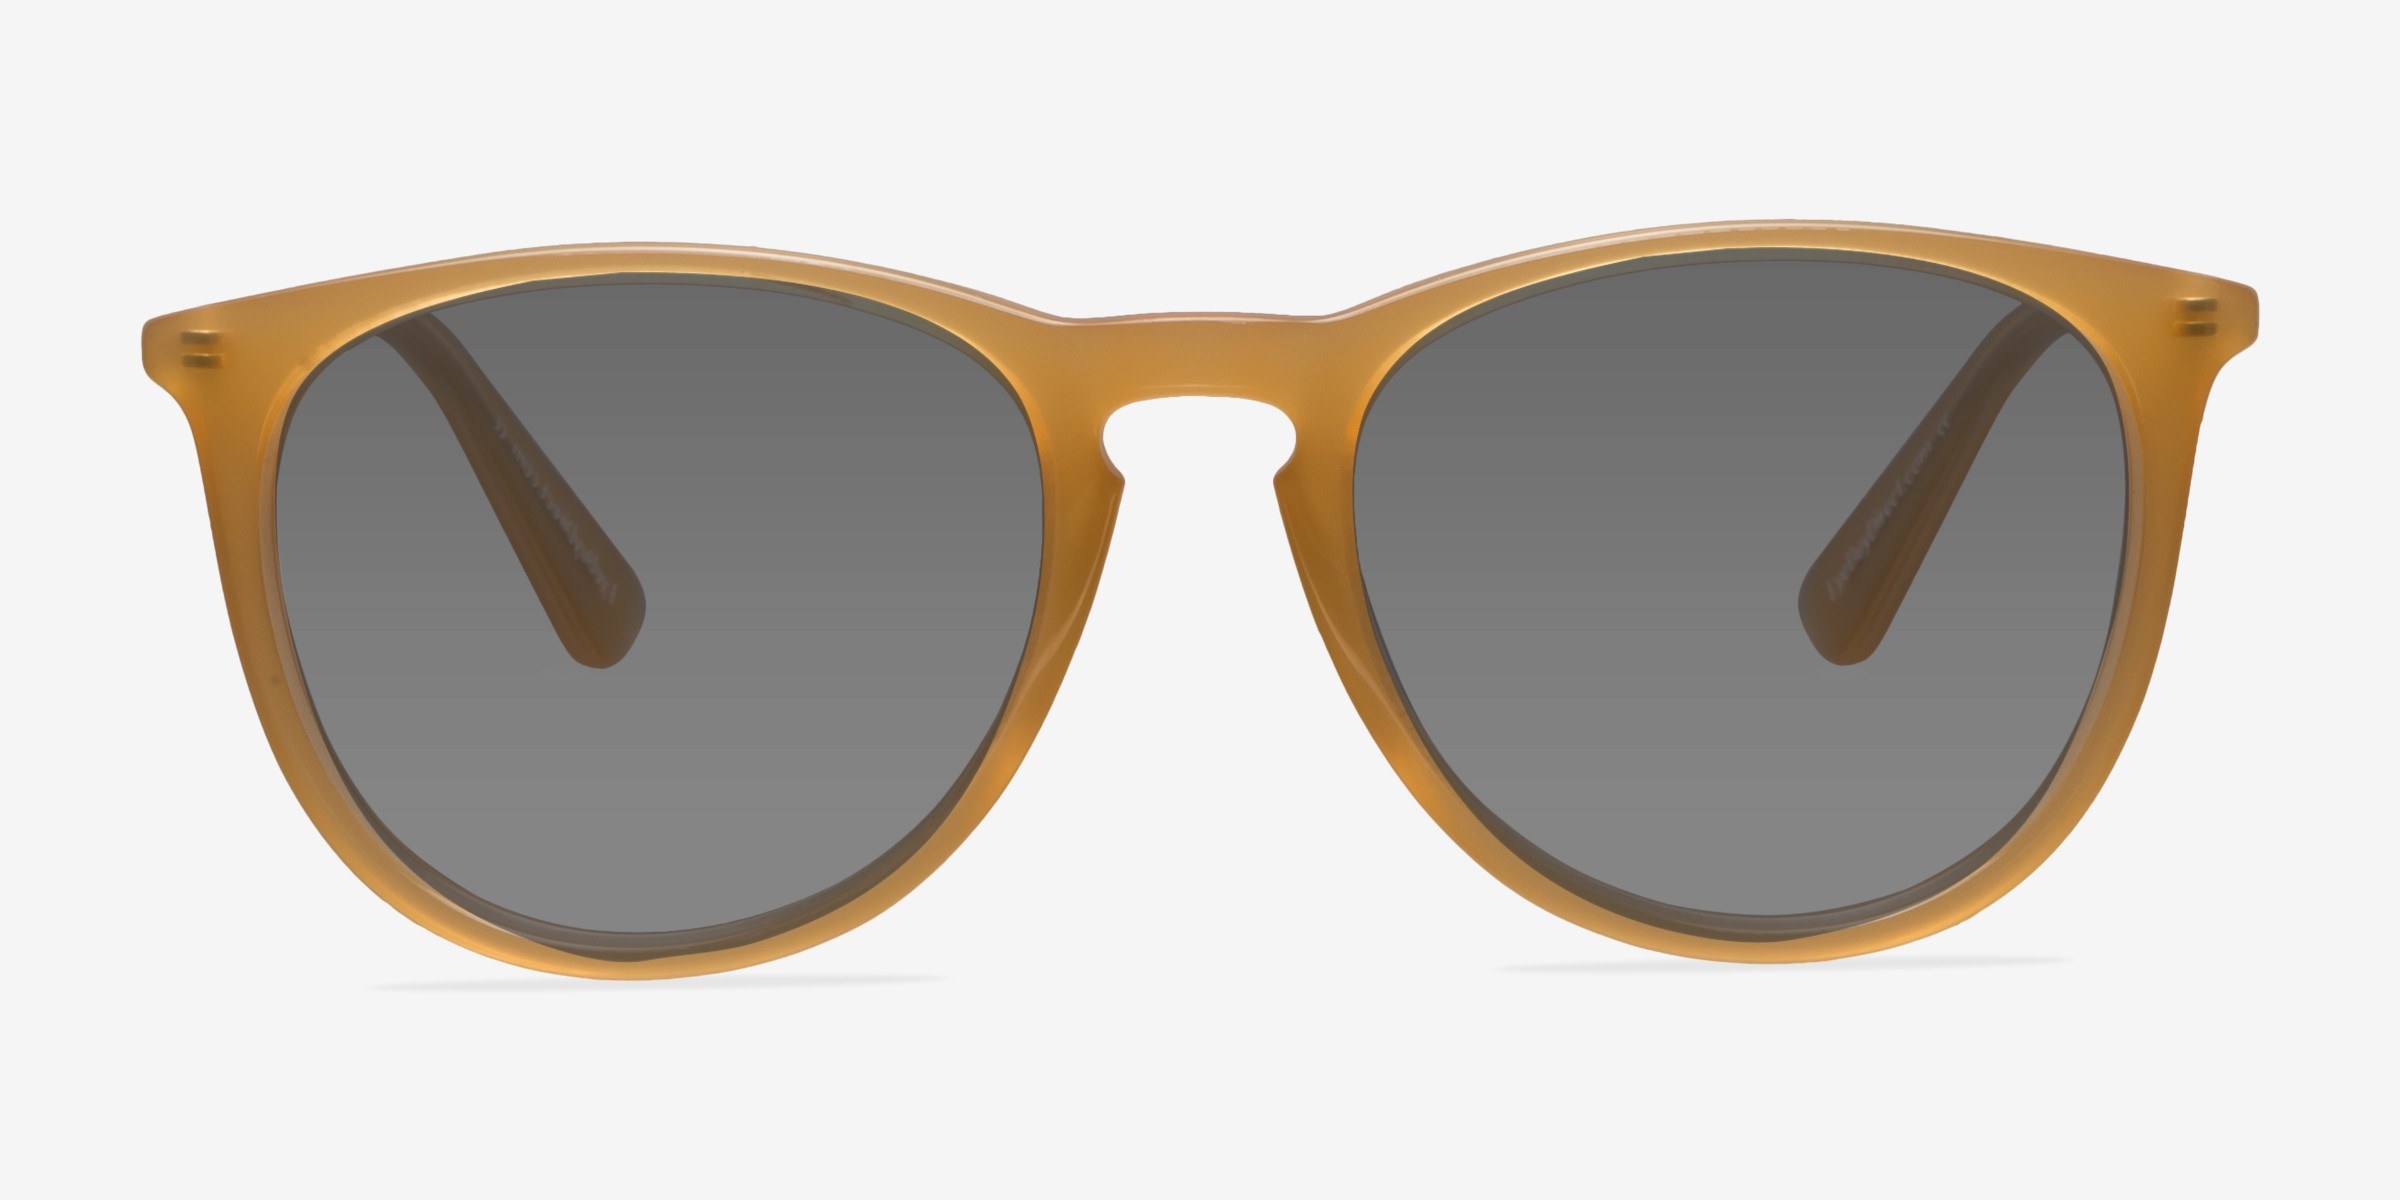 Interlude - Round Orange Frame Sunglasses For Women | Eyebuydirect